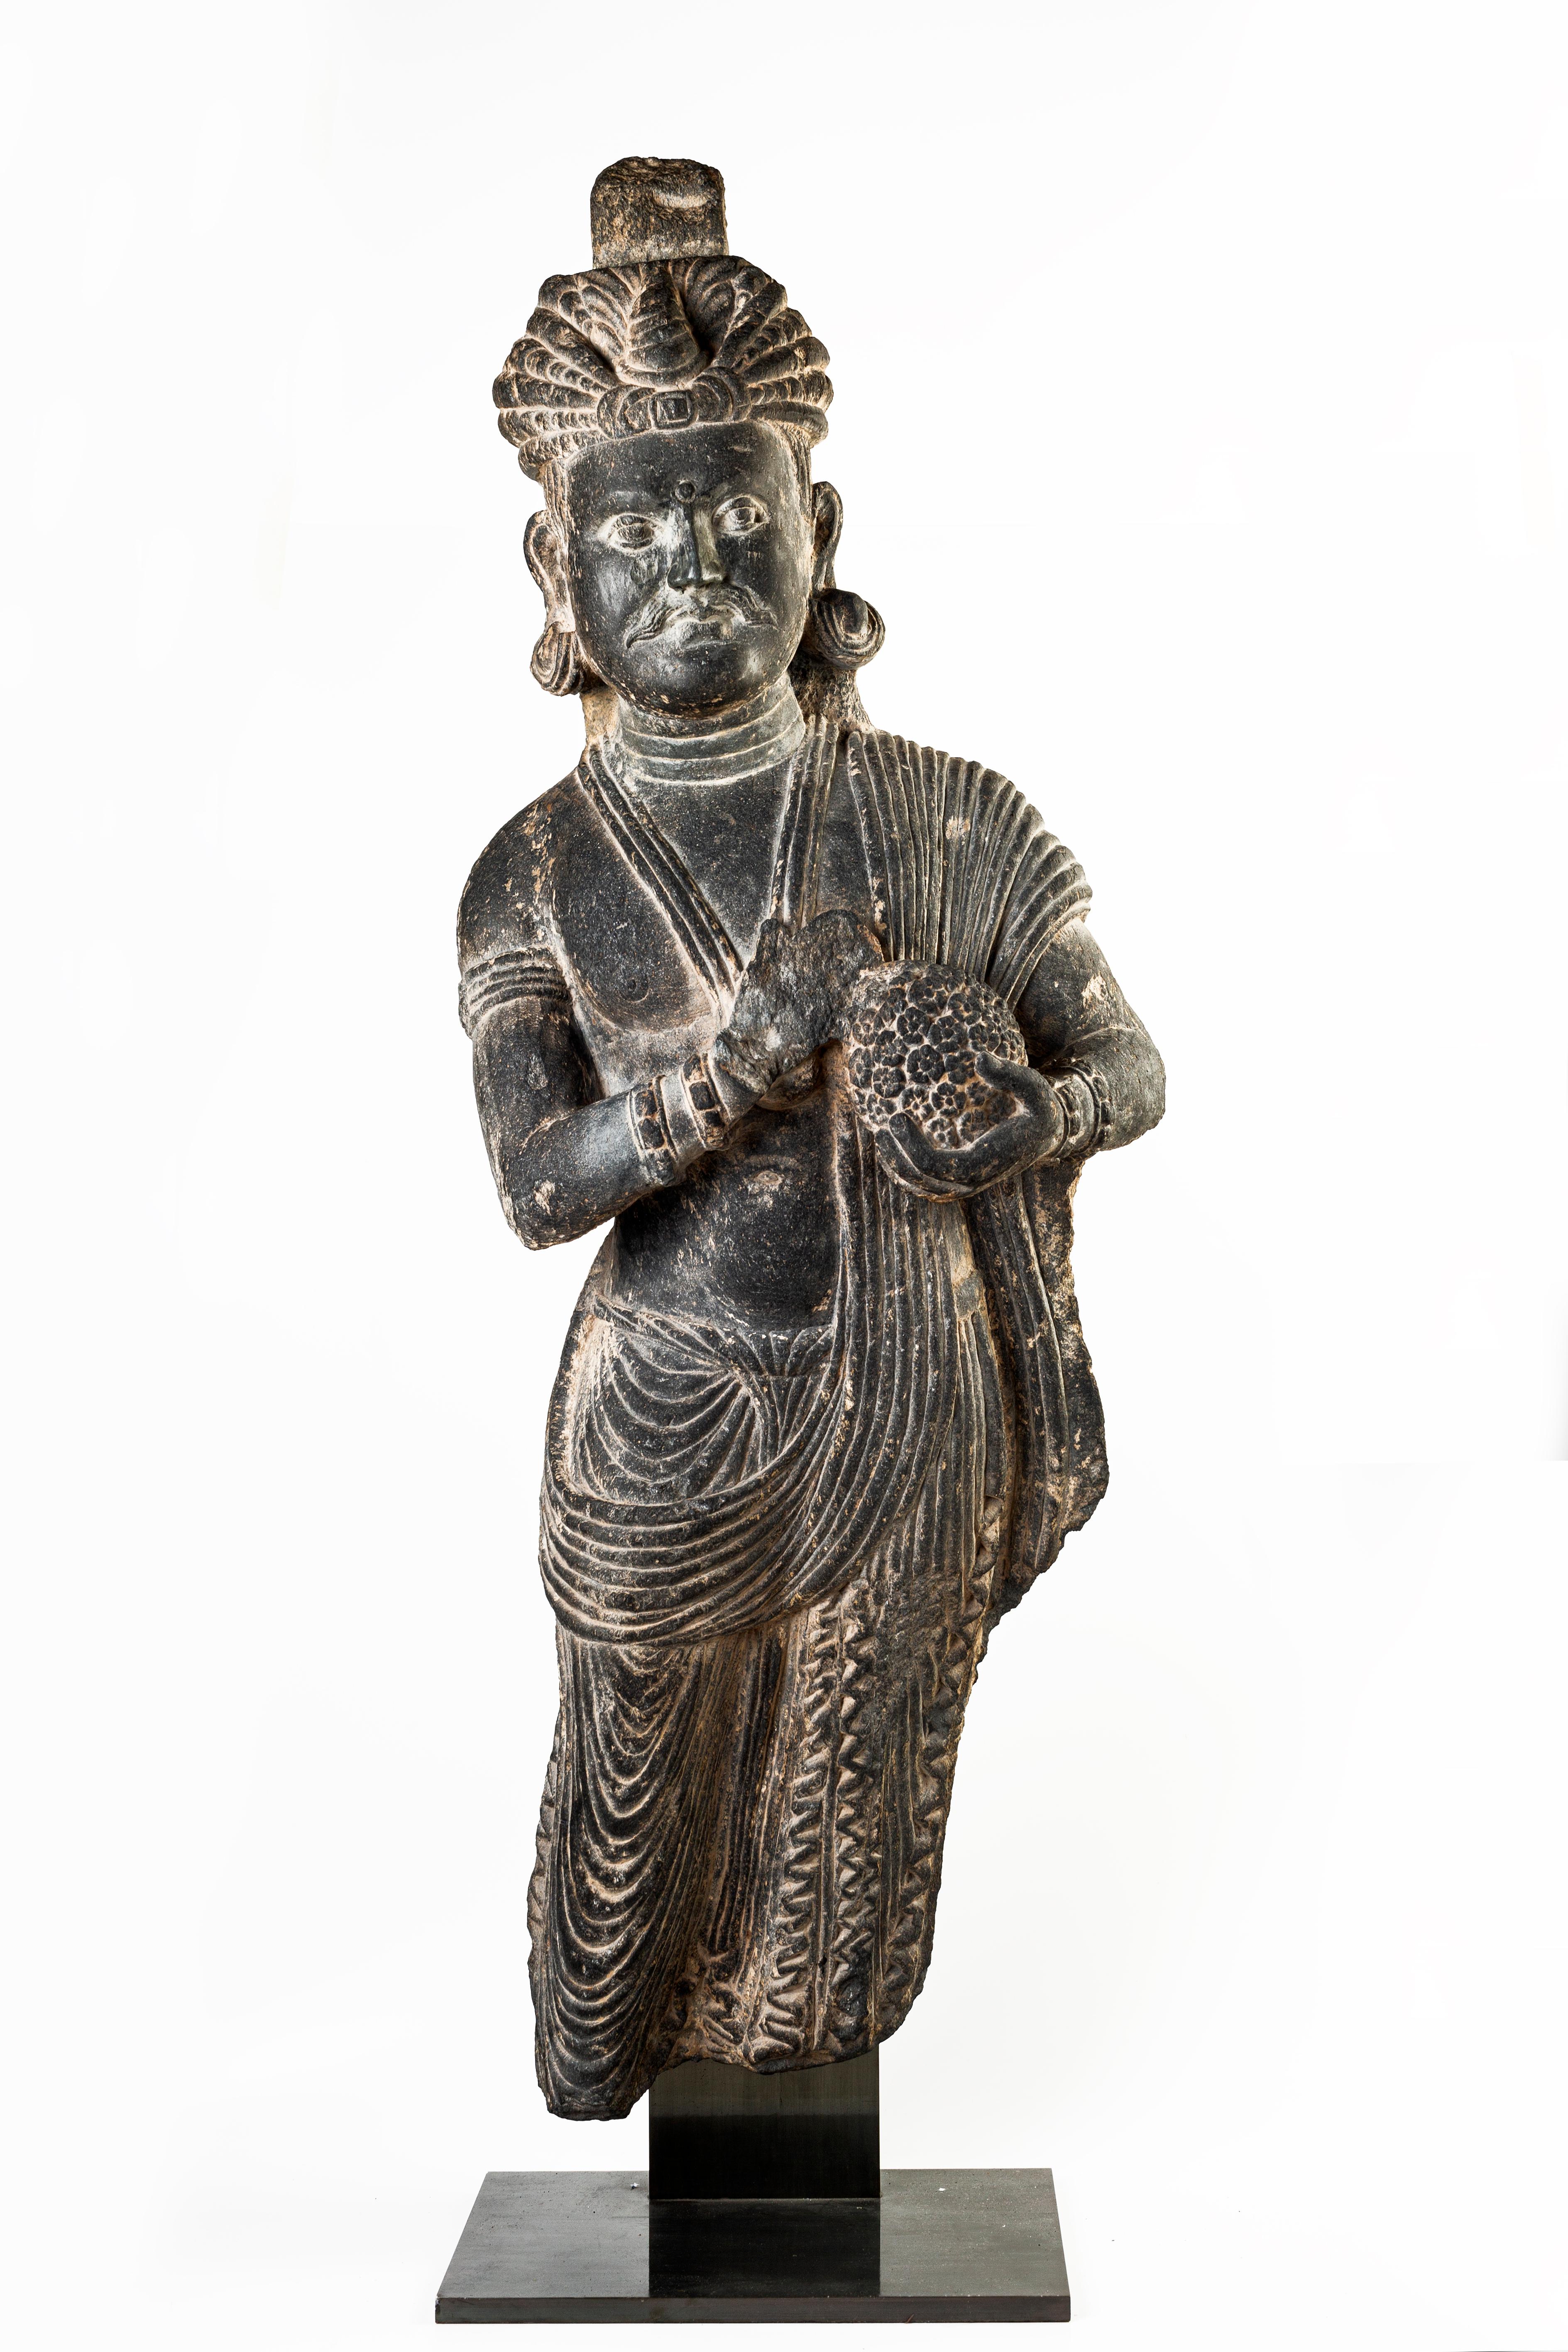 Unknown Figurative Sculpture - Ancient Gandhara Sculpture - 2nd/3rd Century